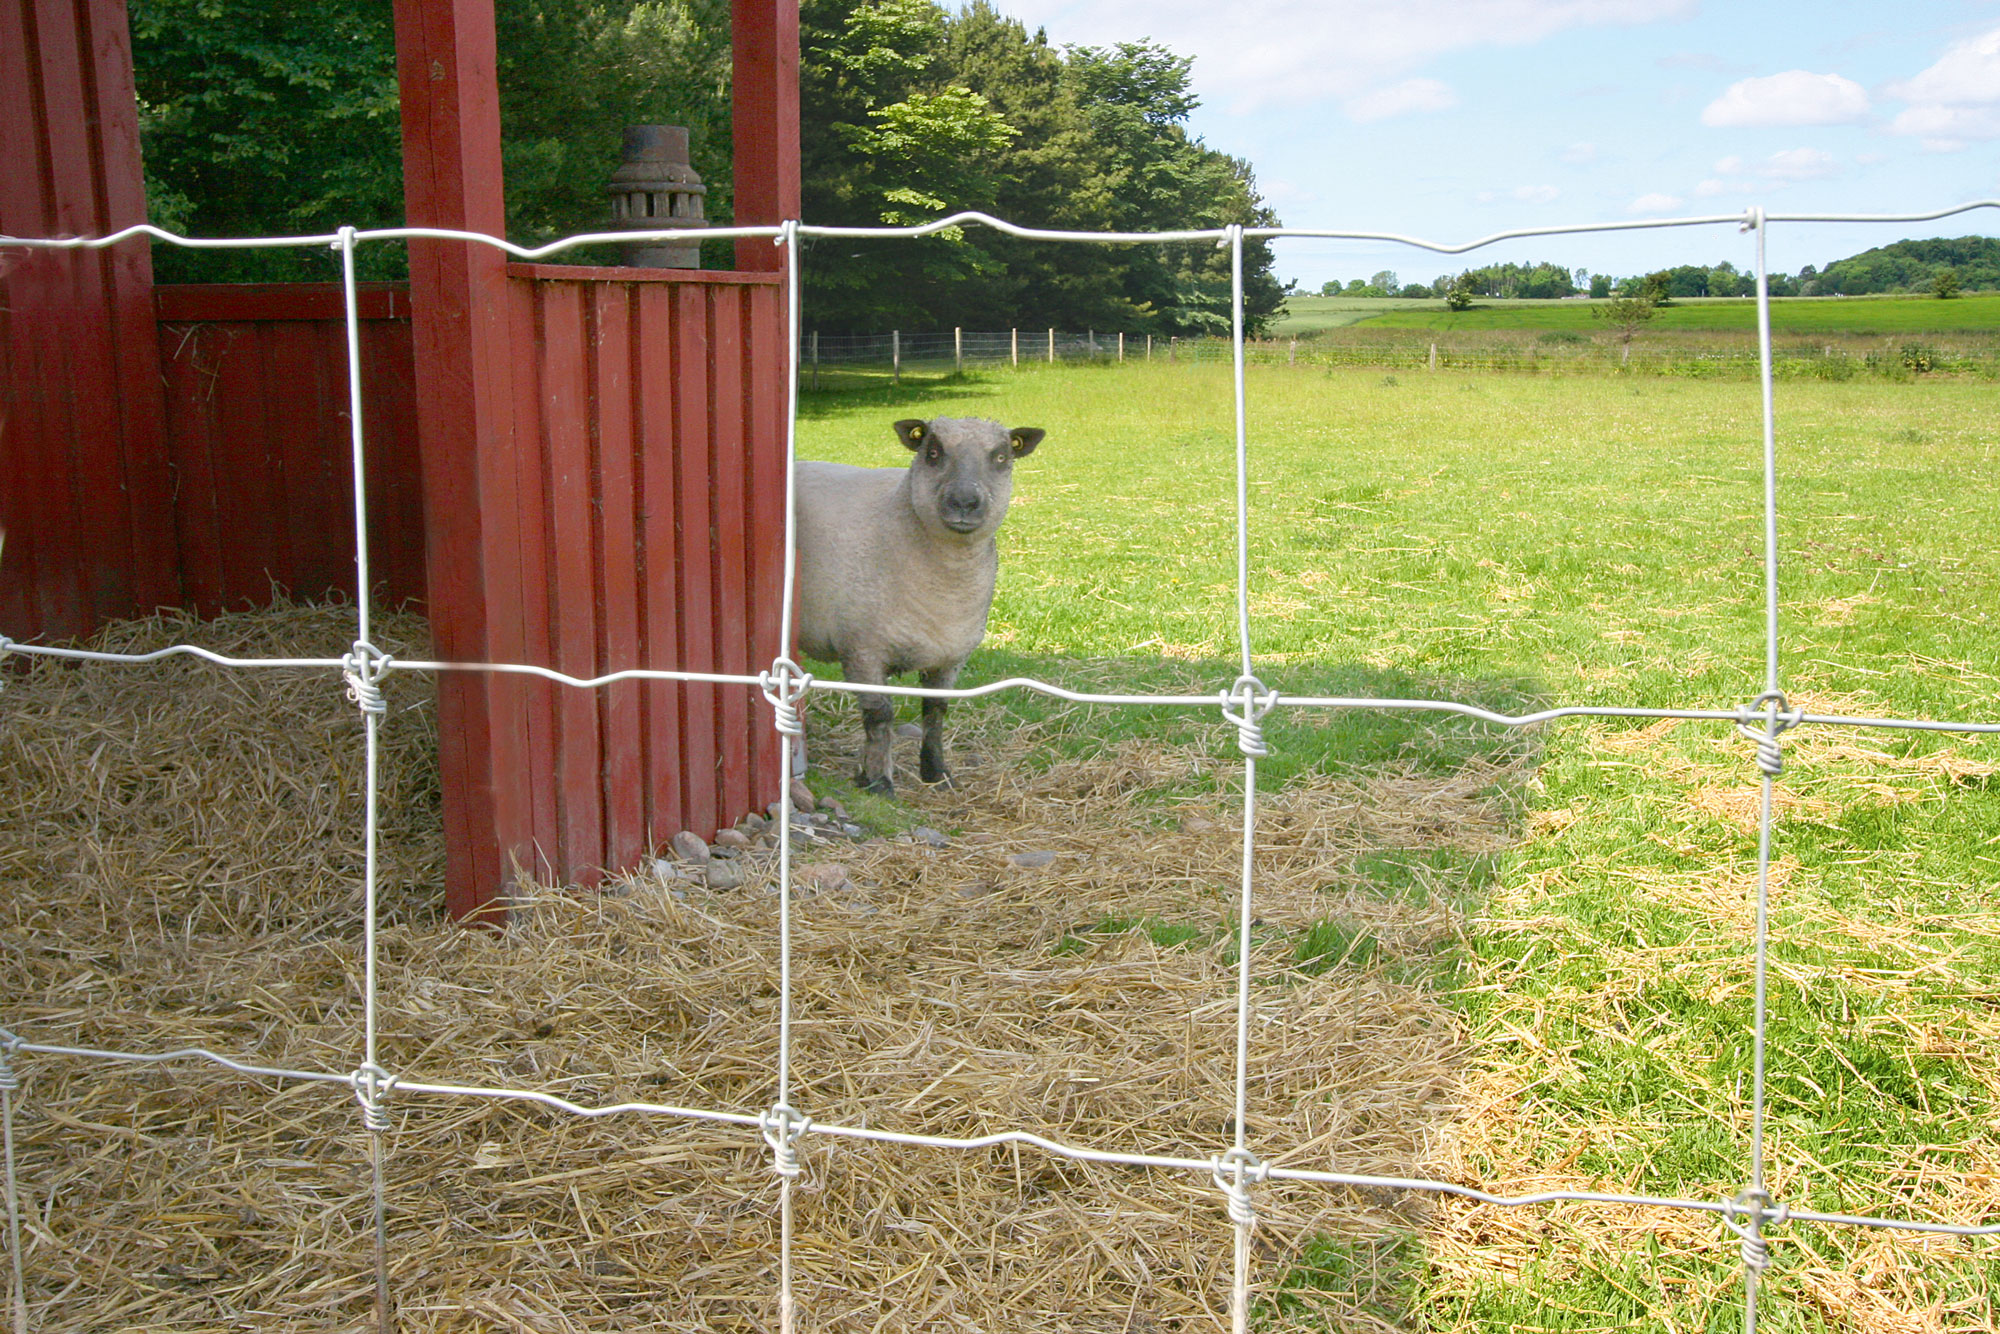 Et får står ved siden af en bygning og kigger ud gennem foldens nethegn.